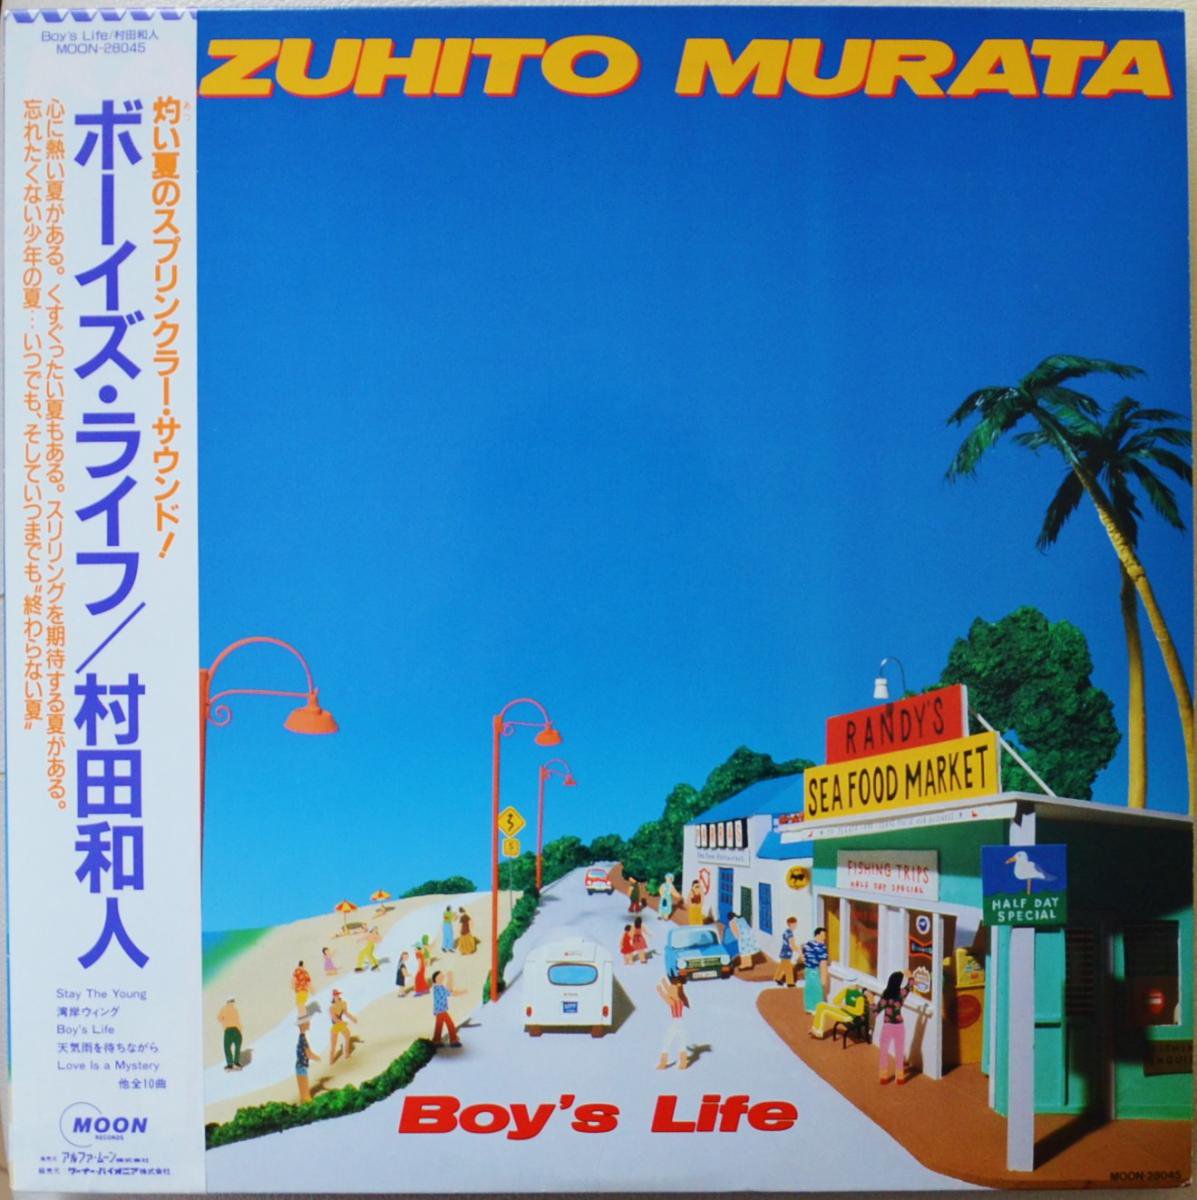 村田和人 KAZUHITO MURATA / ボーイズ・ライフ BOY'S LIFE (LP) - HIP TANK RECORDS